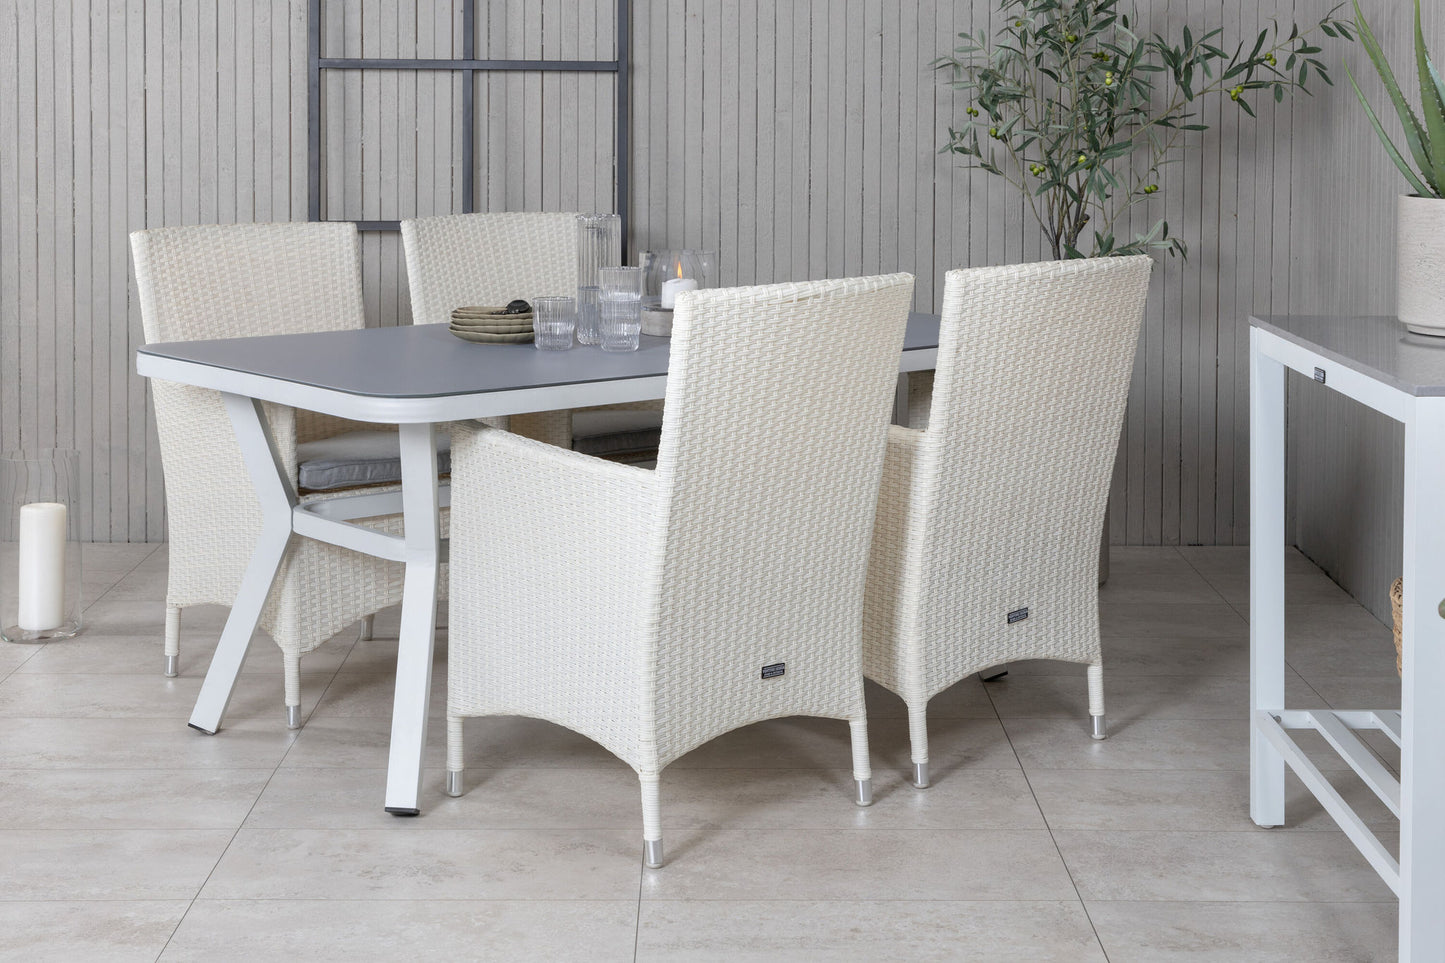 Virya - Spisebord, Hvid Alu / Grå glas - small table+ Mali - Lænestol med dyna - Hvid / grå dyna